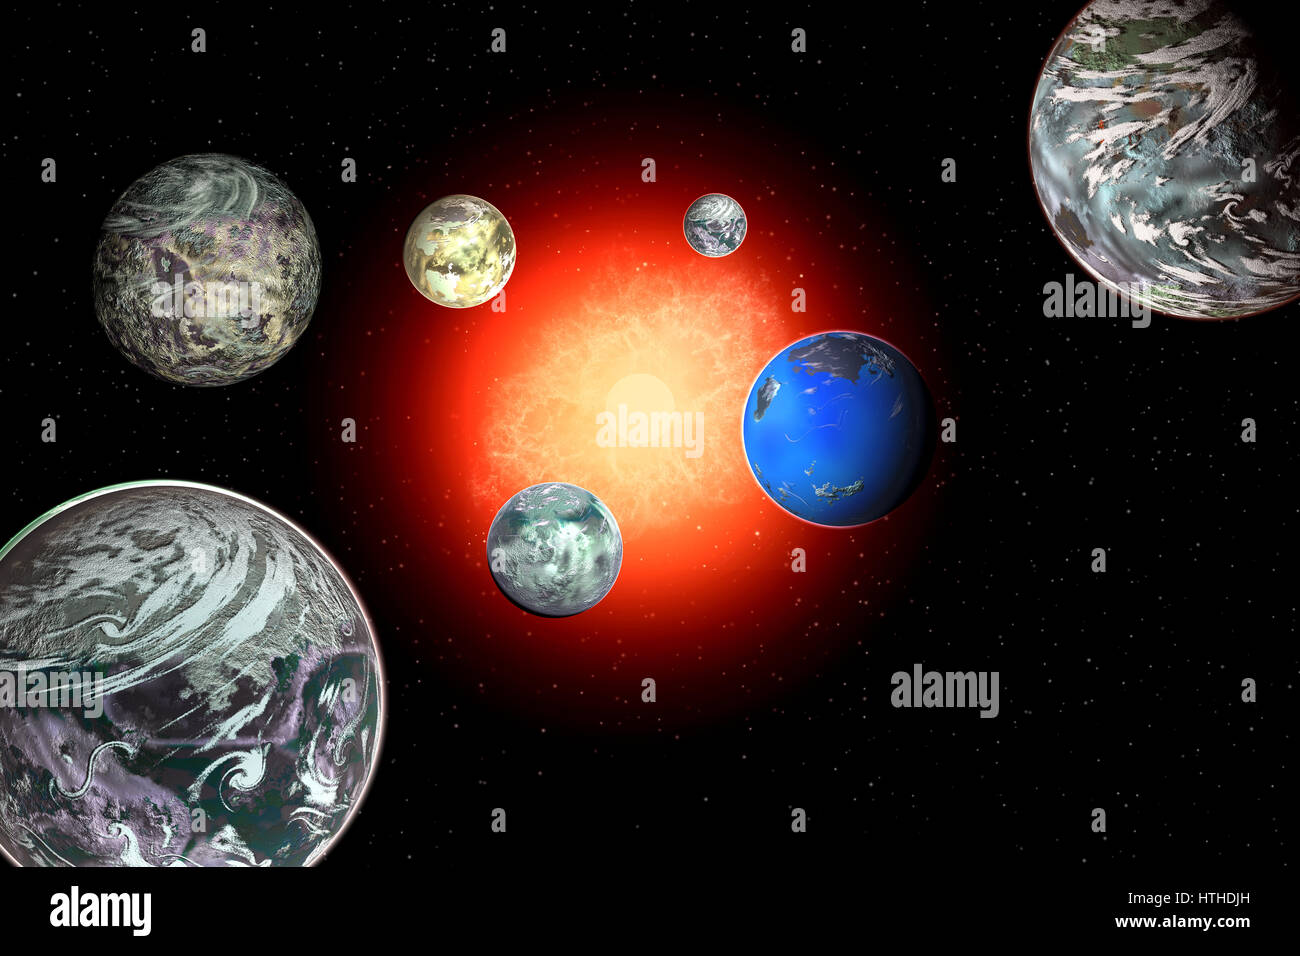 La stella nana sistema chiamato "Trappist' come 7 exoplanets orbitanti intorno ad esso. Foto Stock